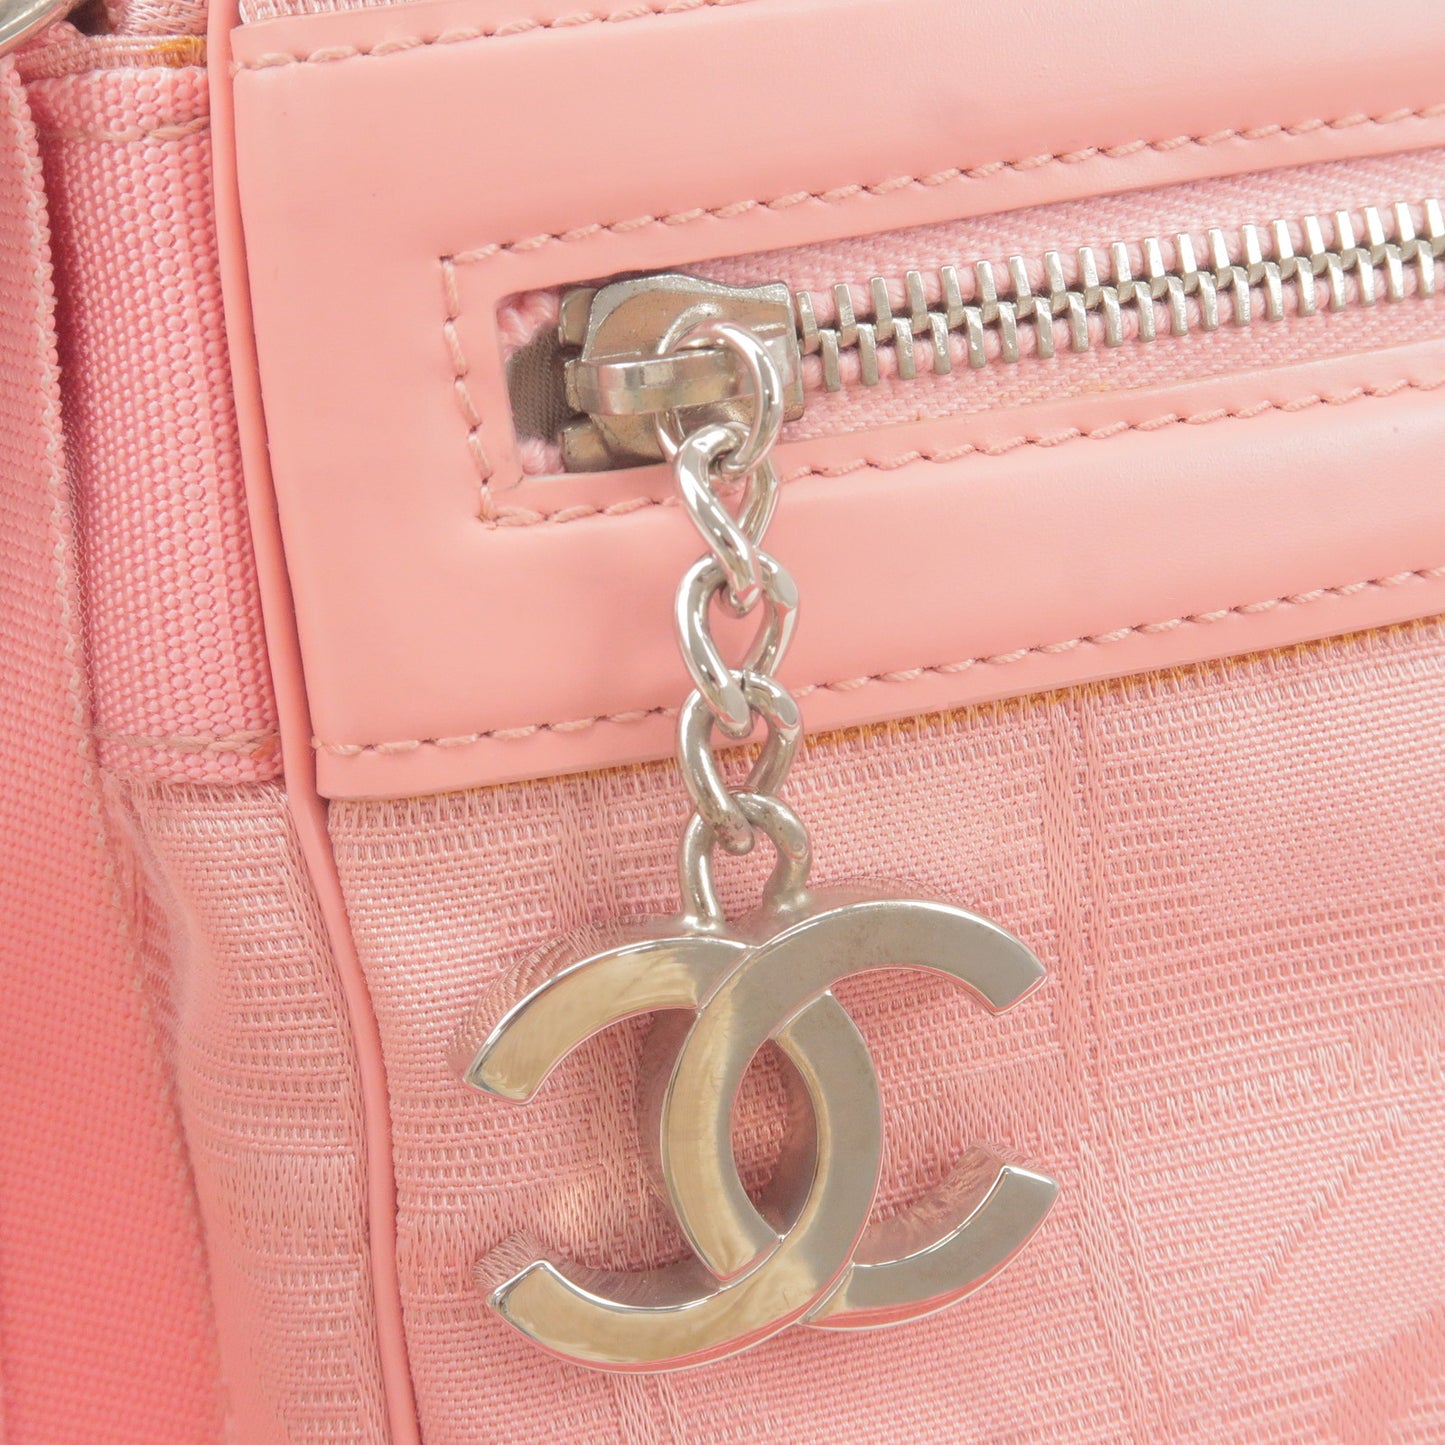 CHANEL Travel Line Nylon Jacquard Leather Shoulder bag Pink A30913